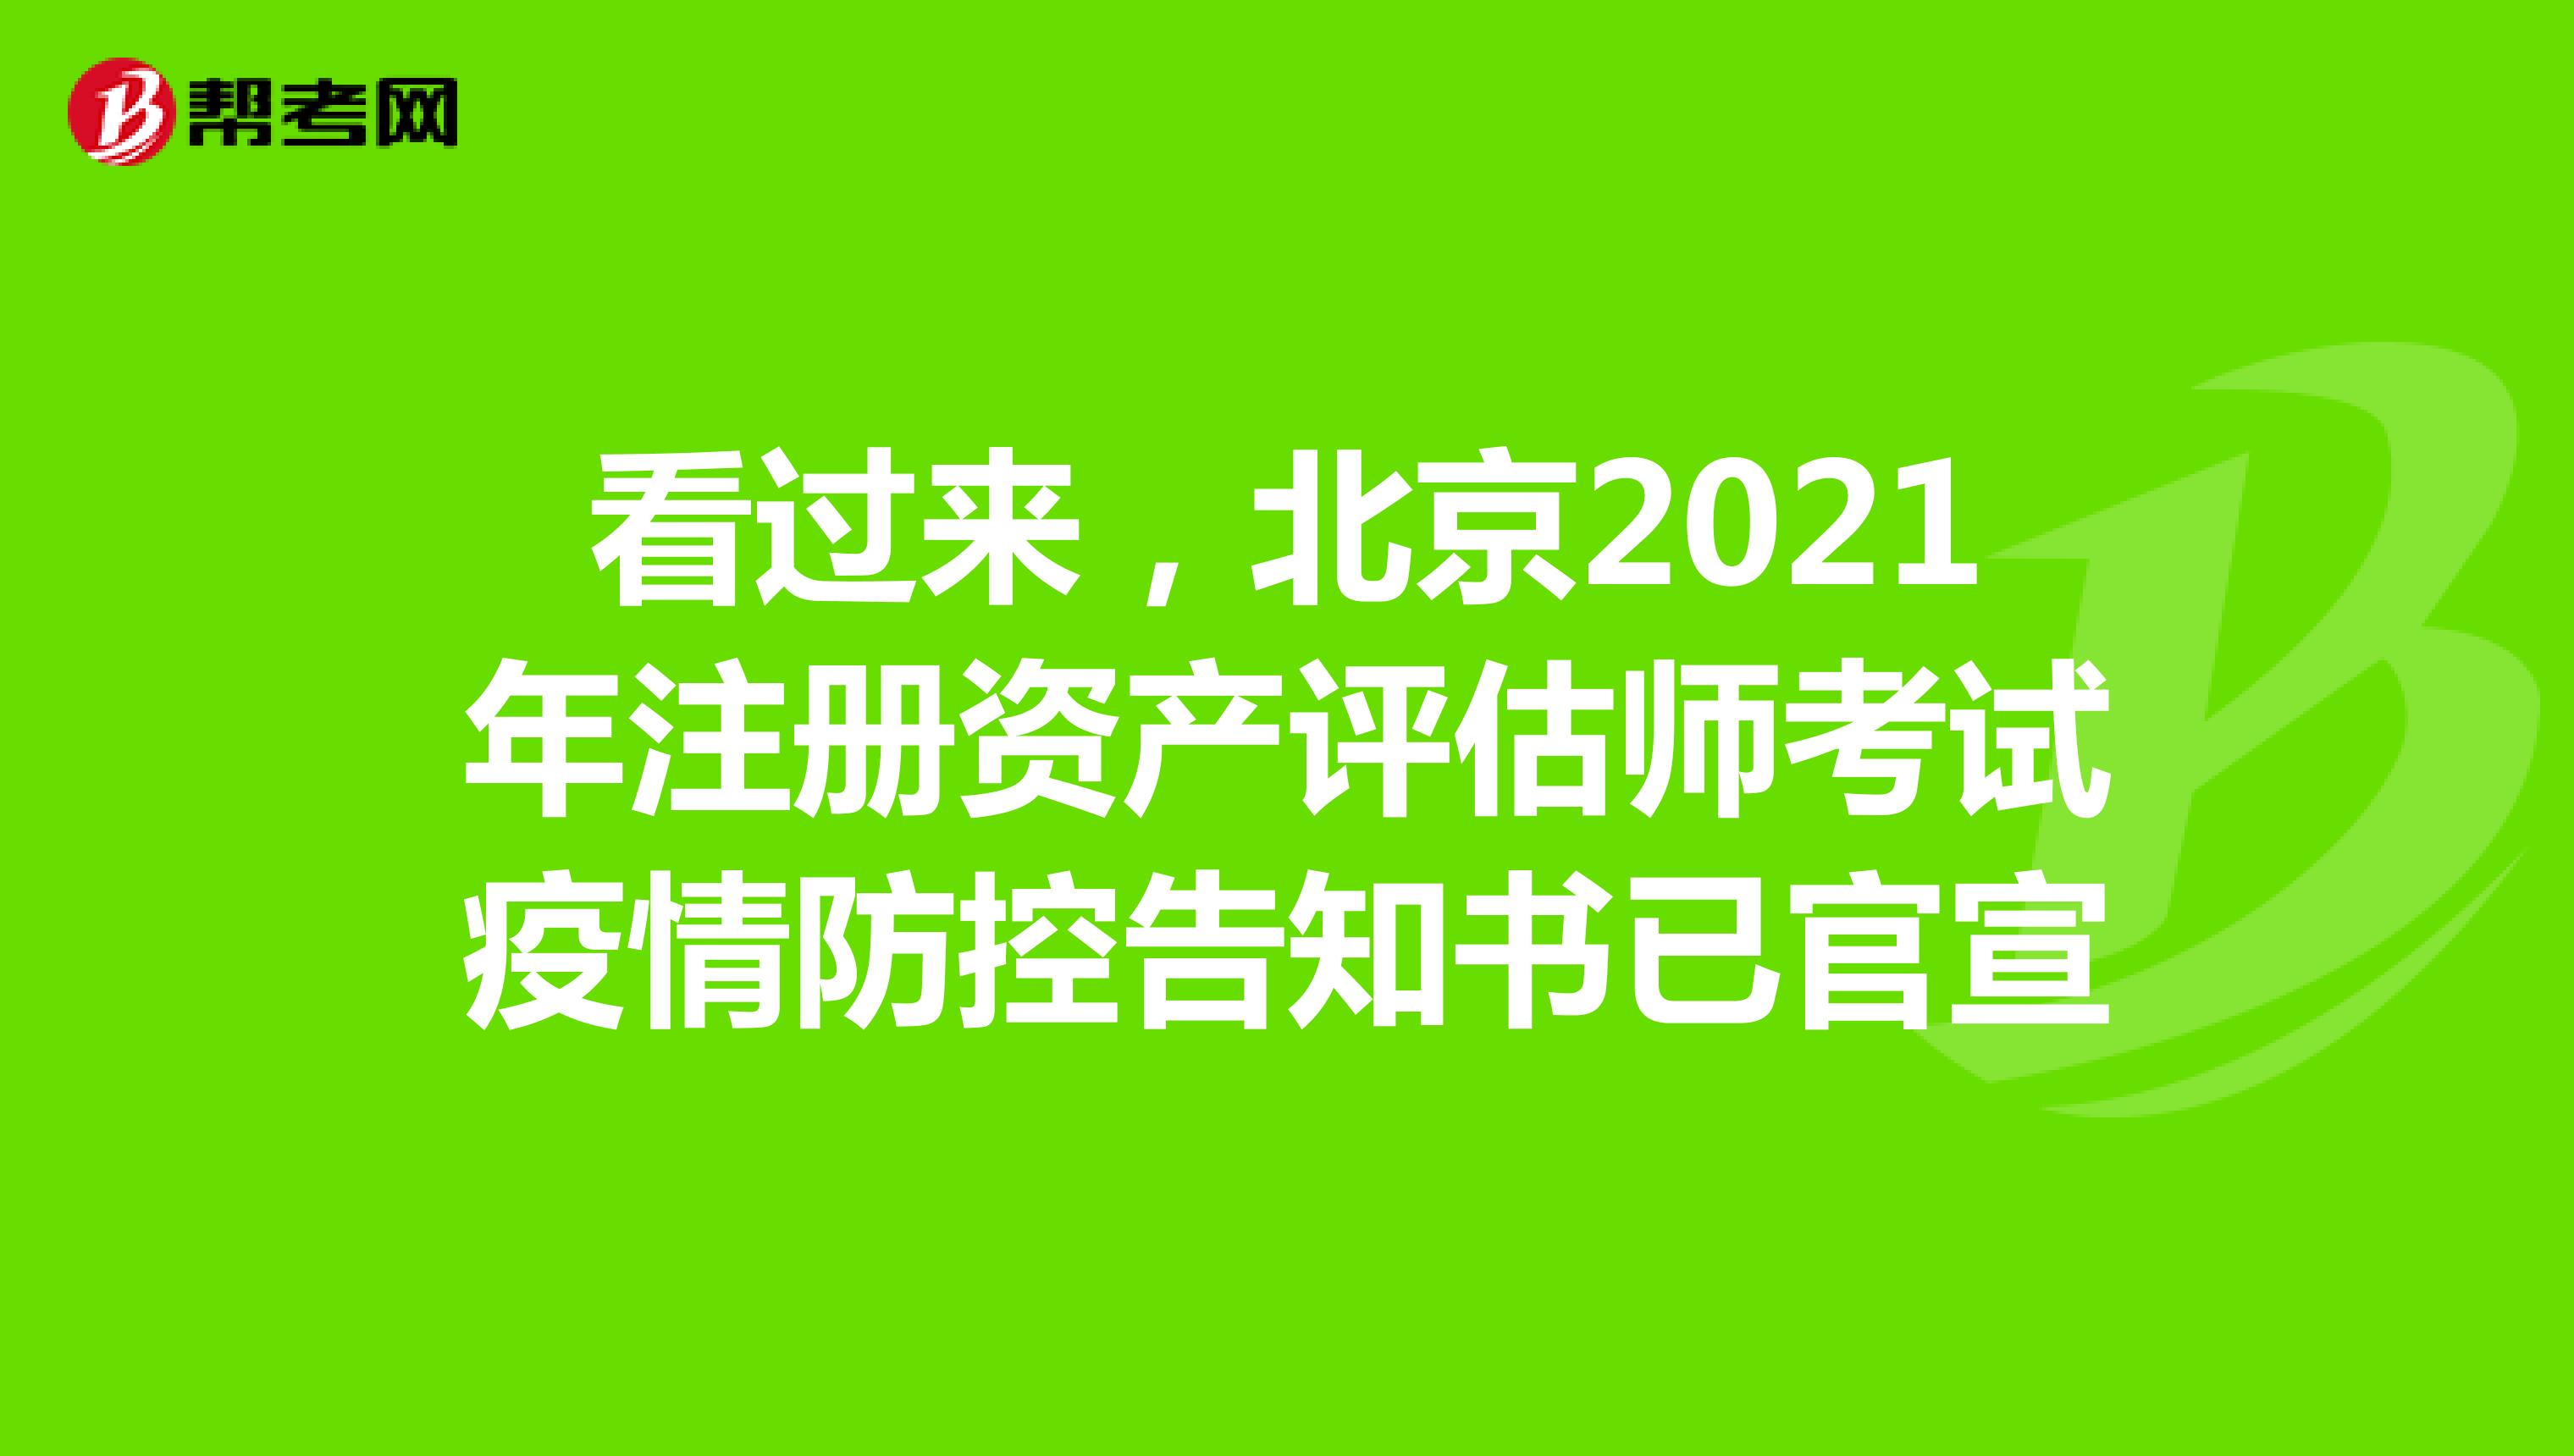 看过来，北京2021年注册资产评估师考试疫情防控告知书已官宣